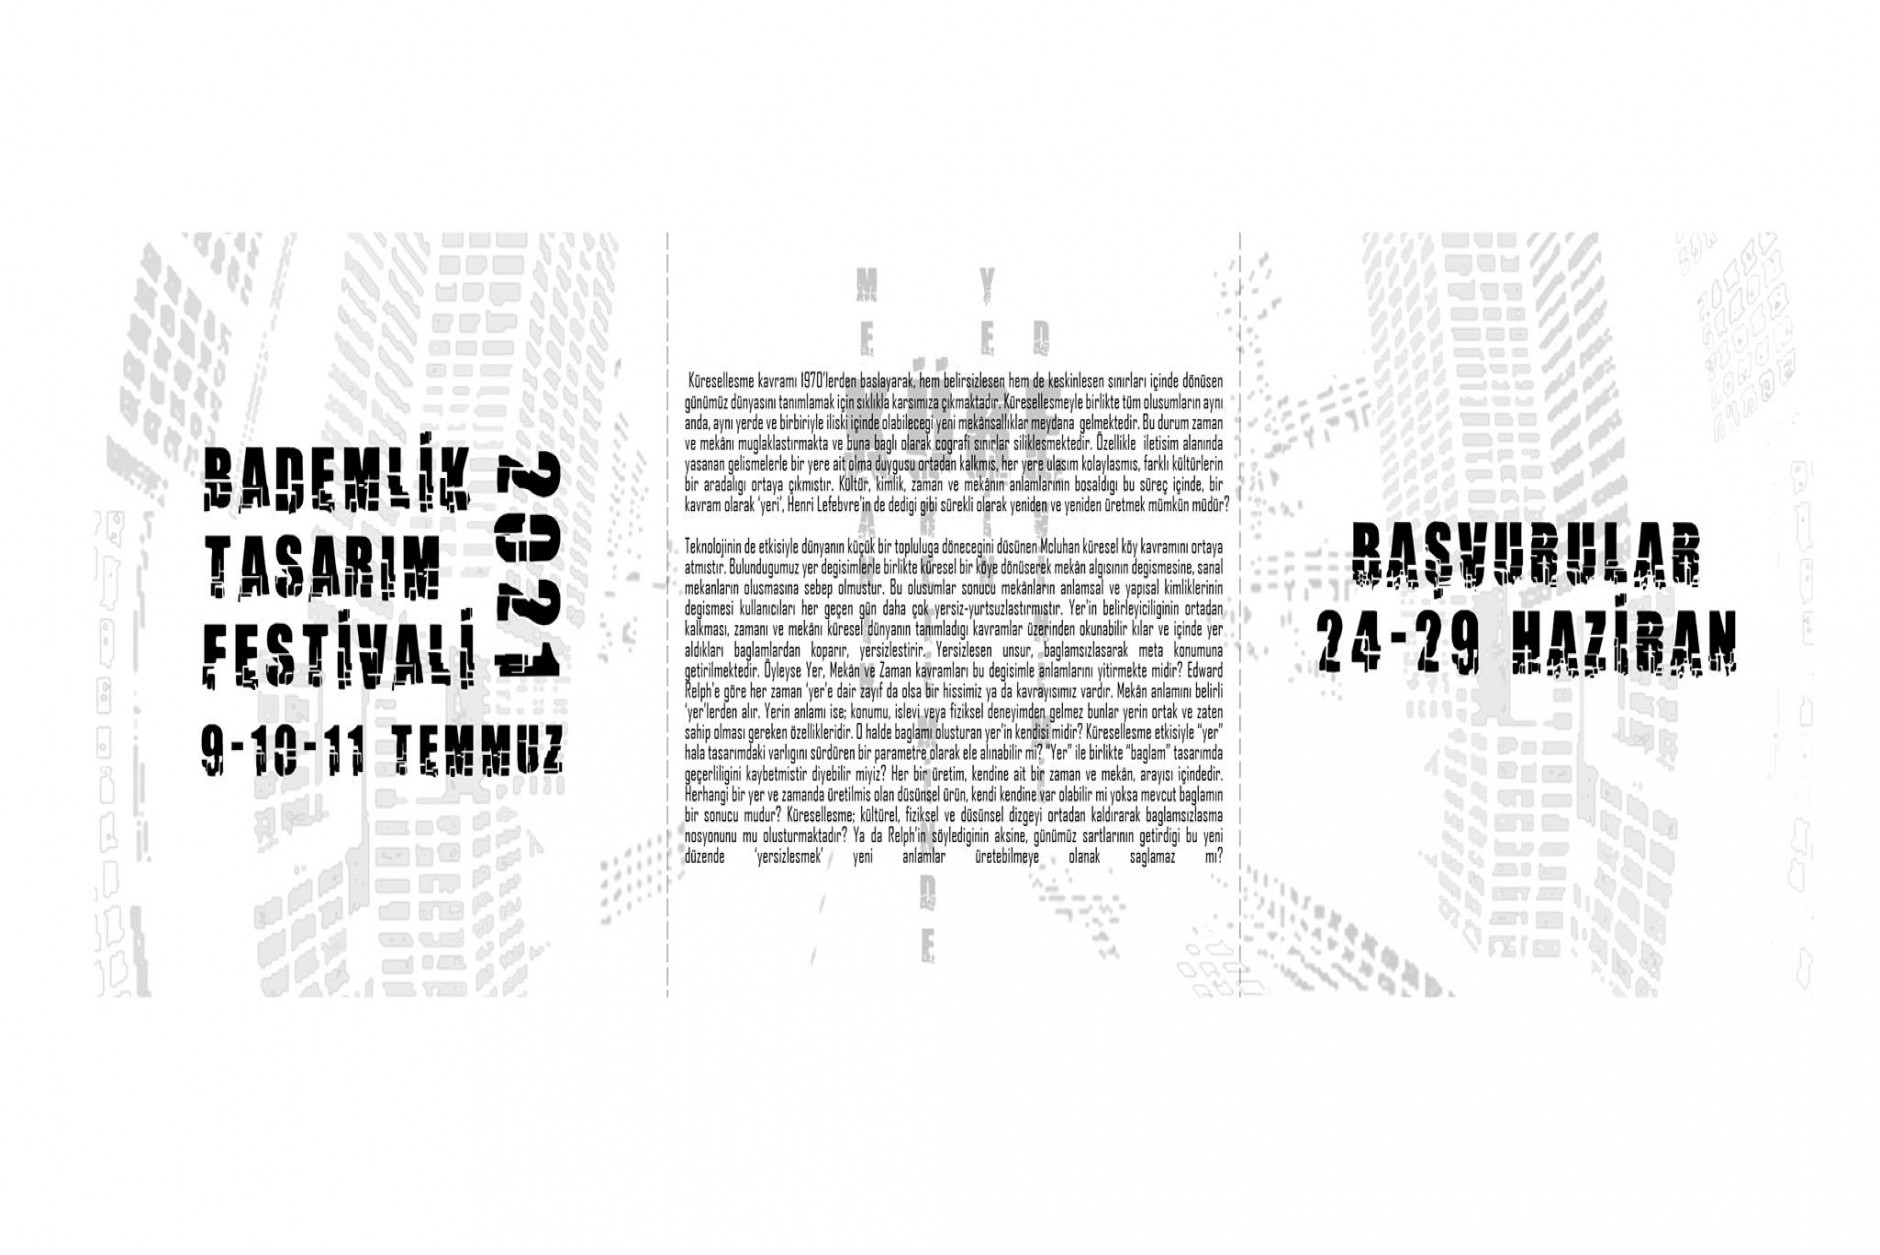 Bademlik Tasarım Festivali/ Bademlik Design Festival